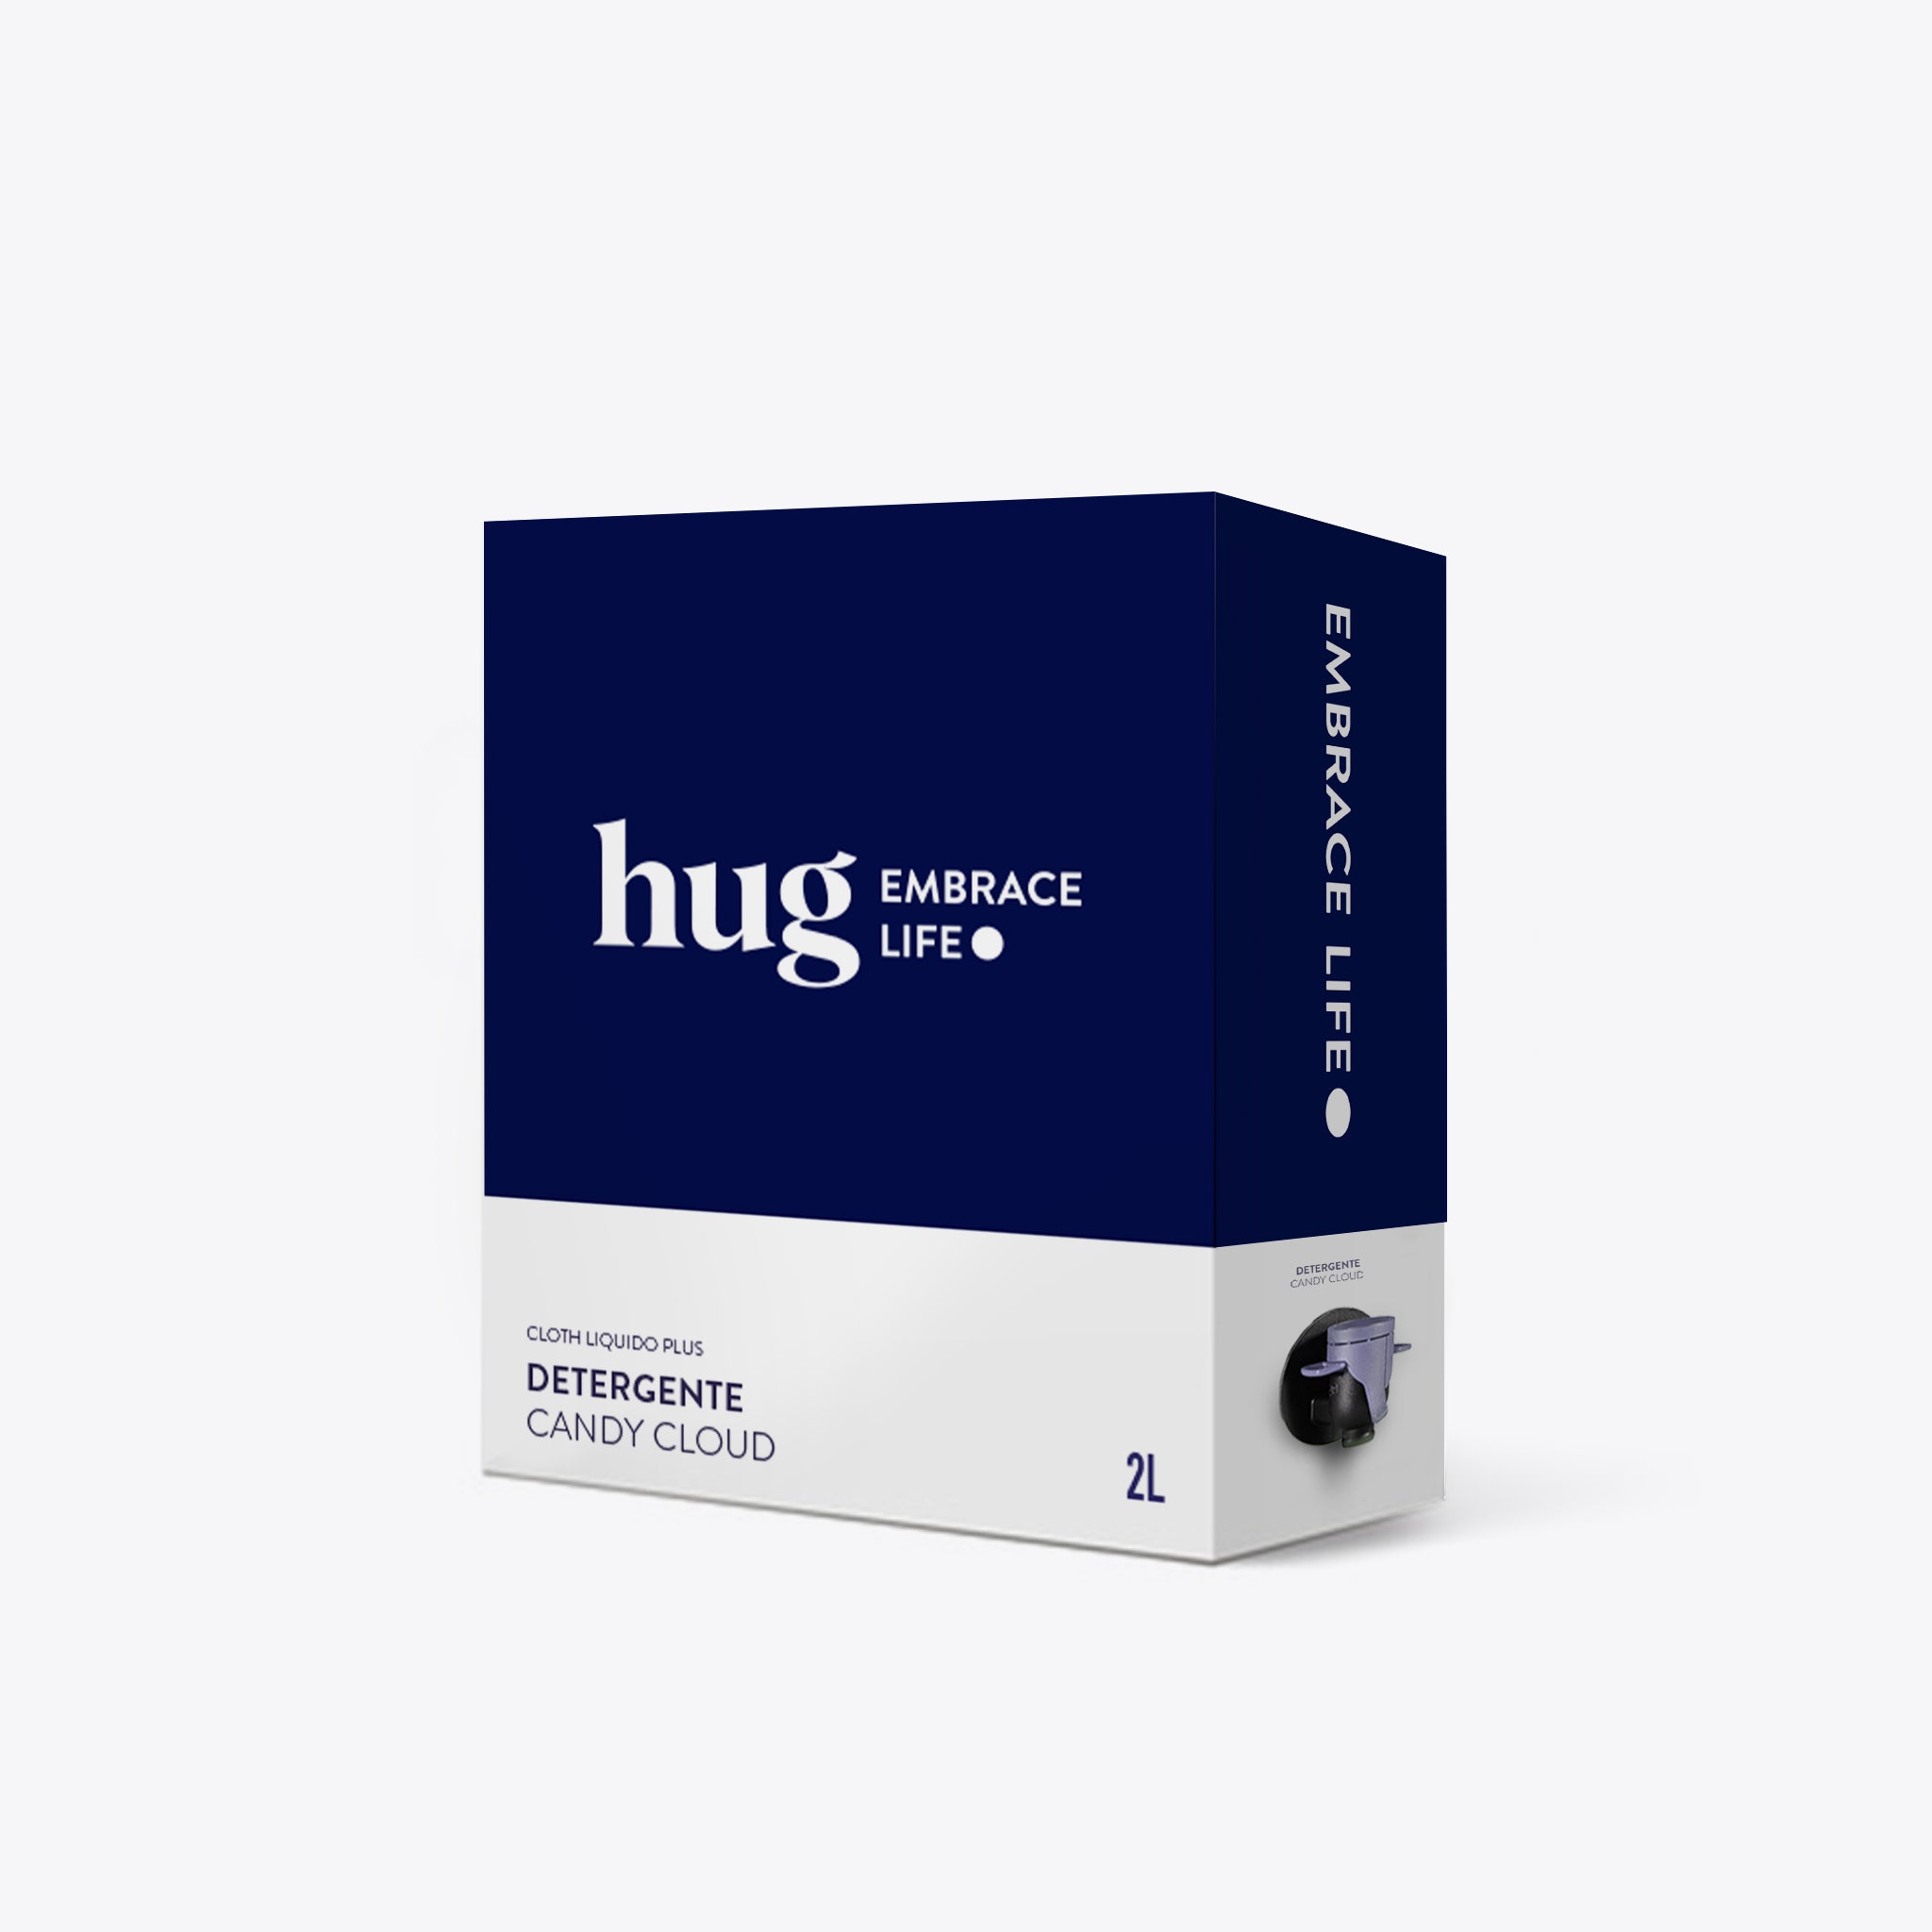 Detergente de Roupa Candy Cloud 2L - HUG - Embrace Life ●